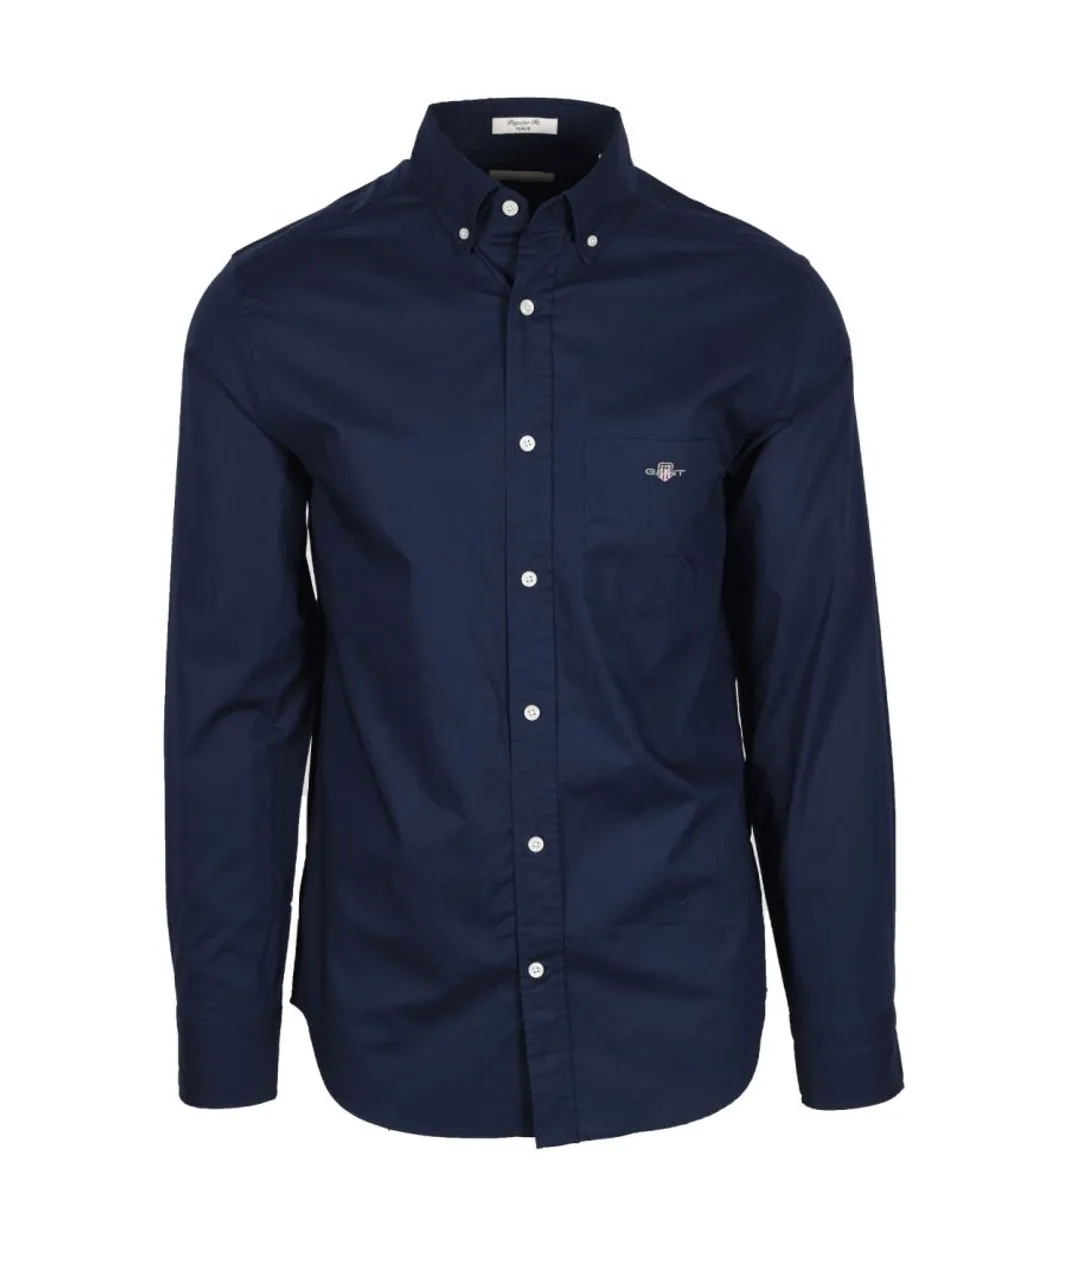 Gant Mens Reg Poplin Shirt Marine - Blue Cotton